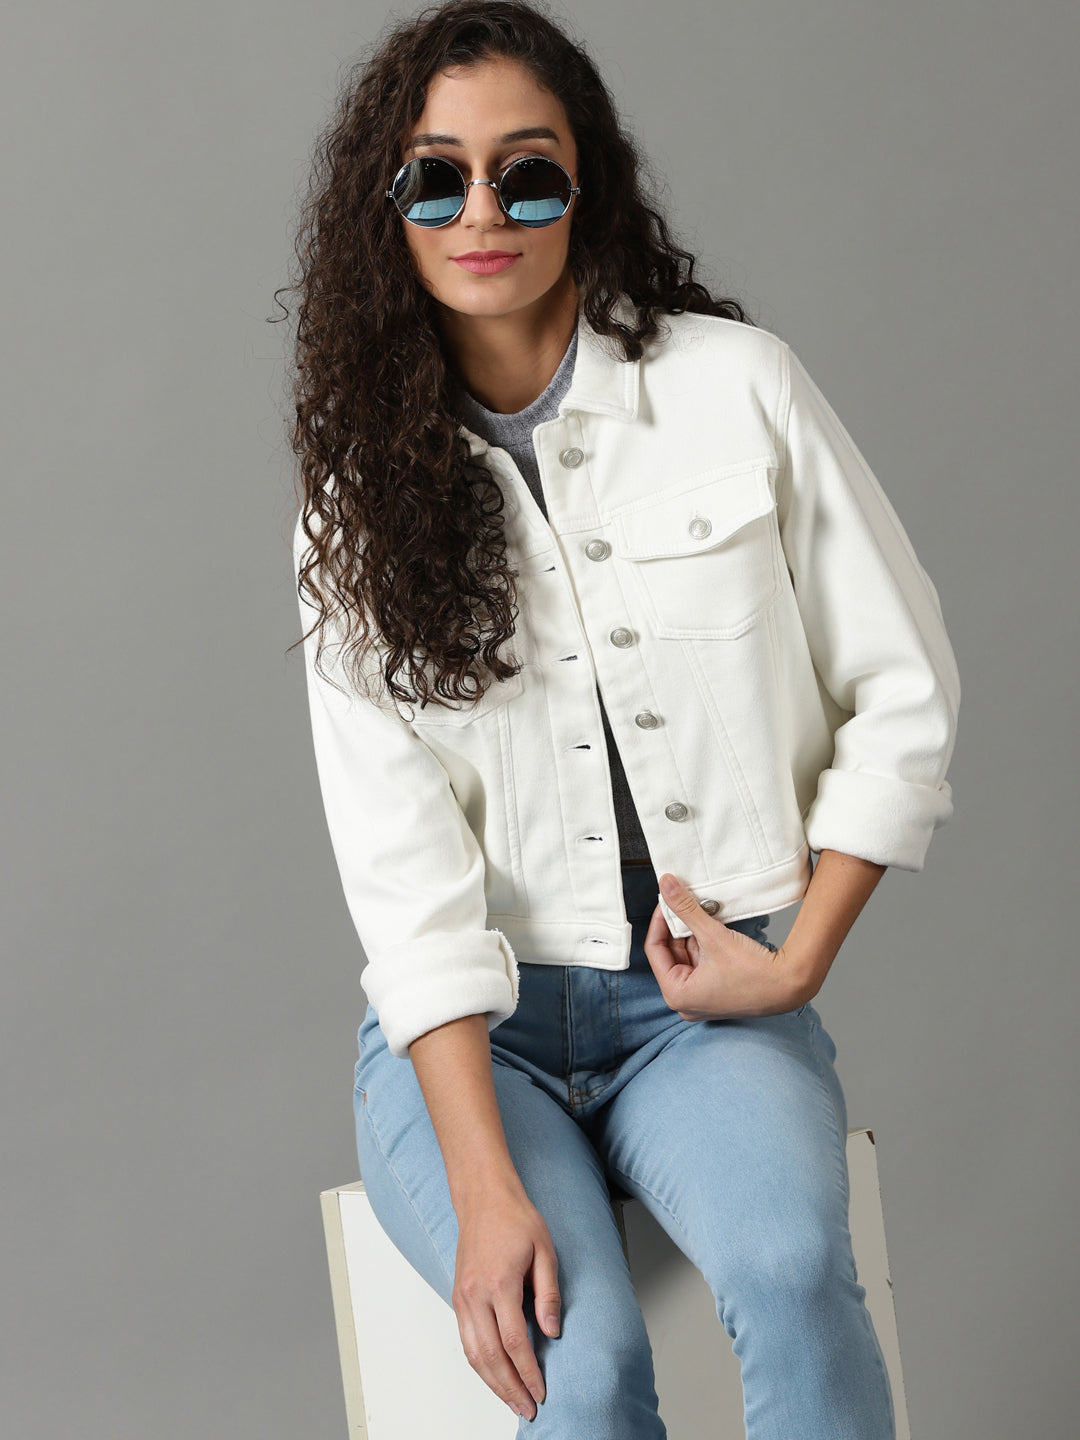 Women's White Solid Denim Jacket